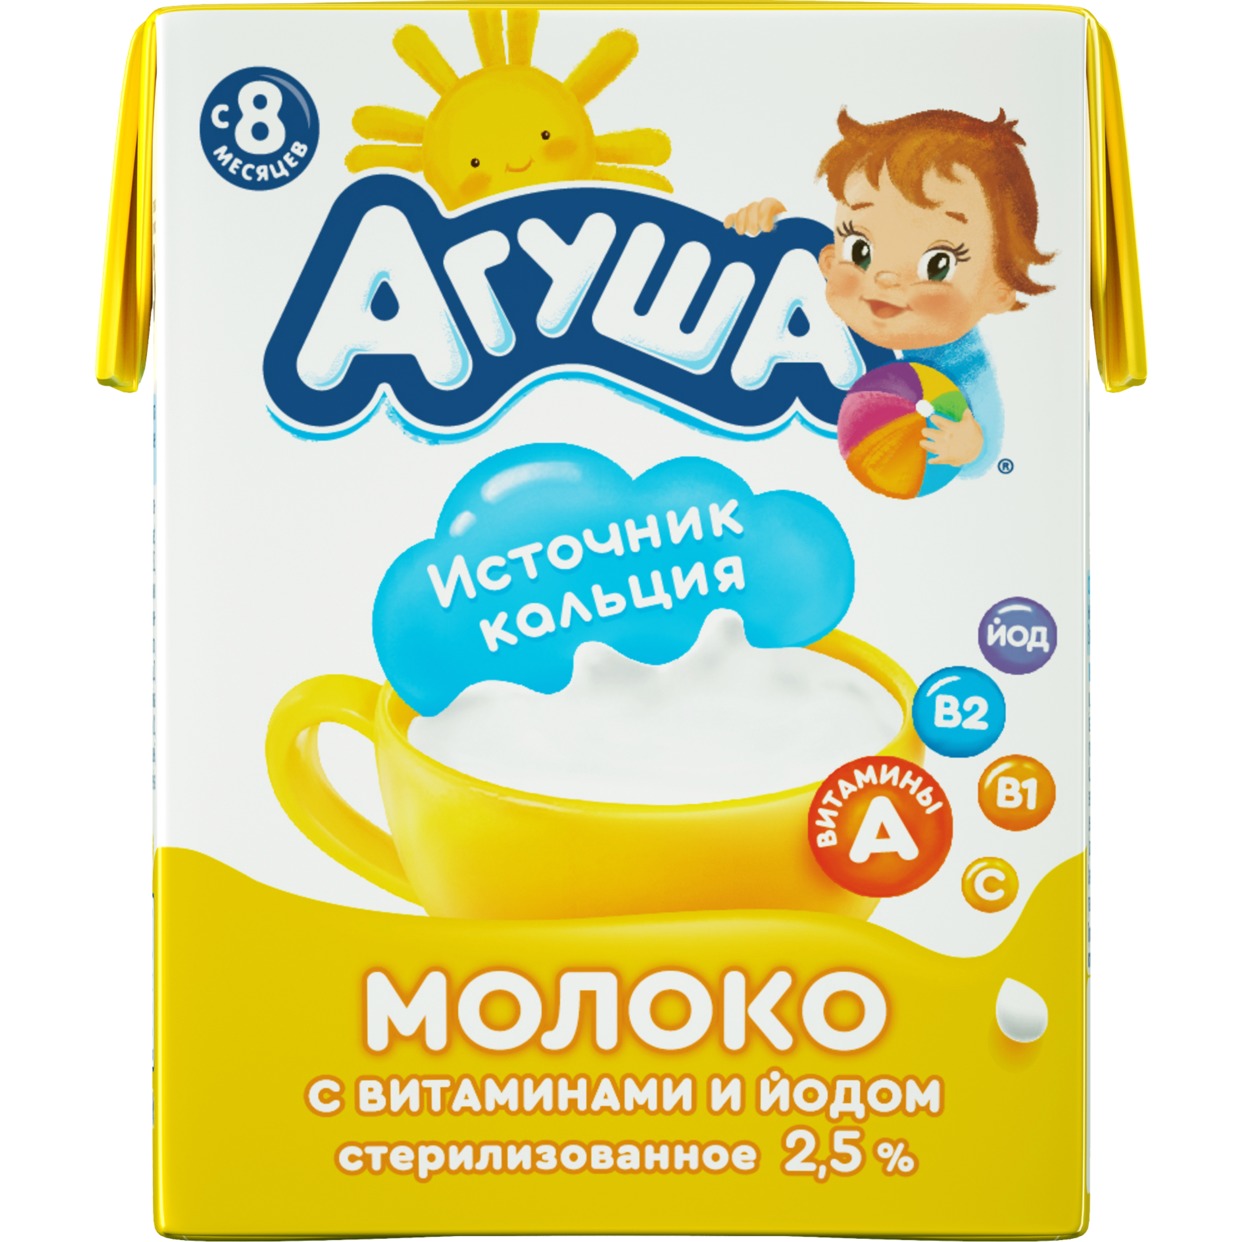 Молоко Агуша, детское, 2,5%, 0,2 л по акции в Пятерочке